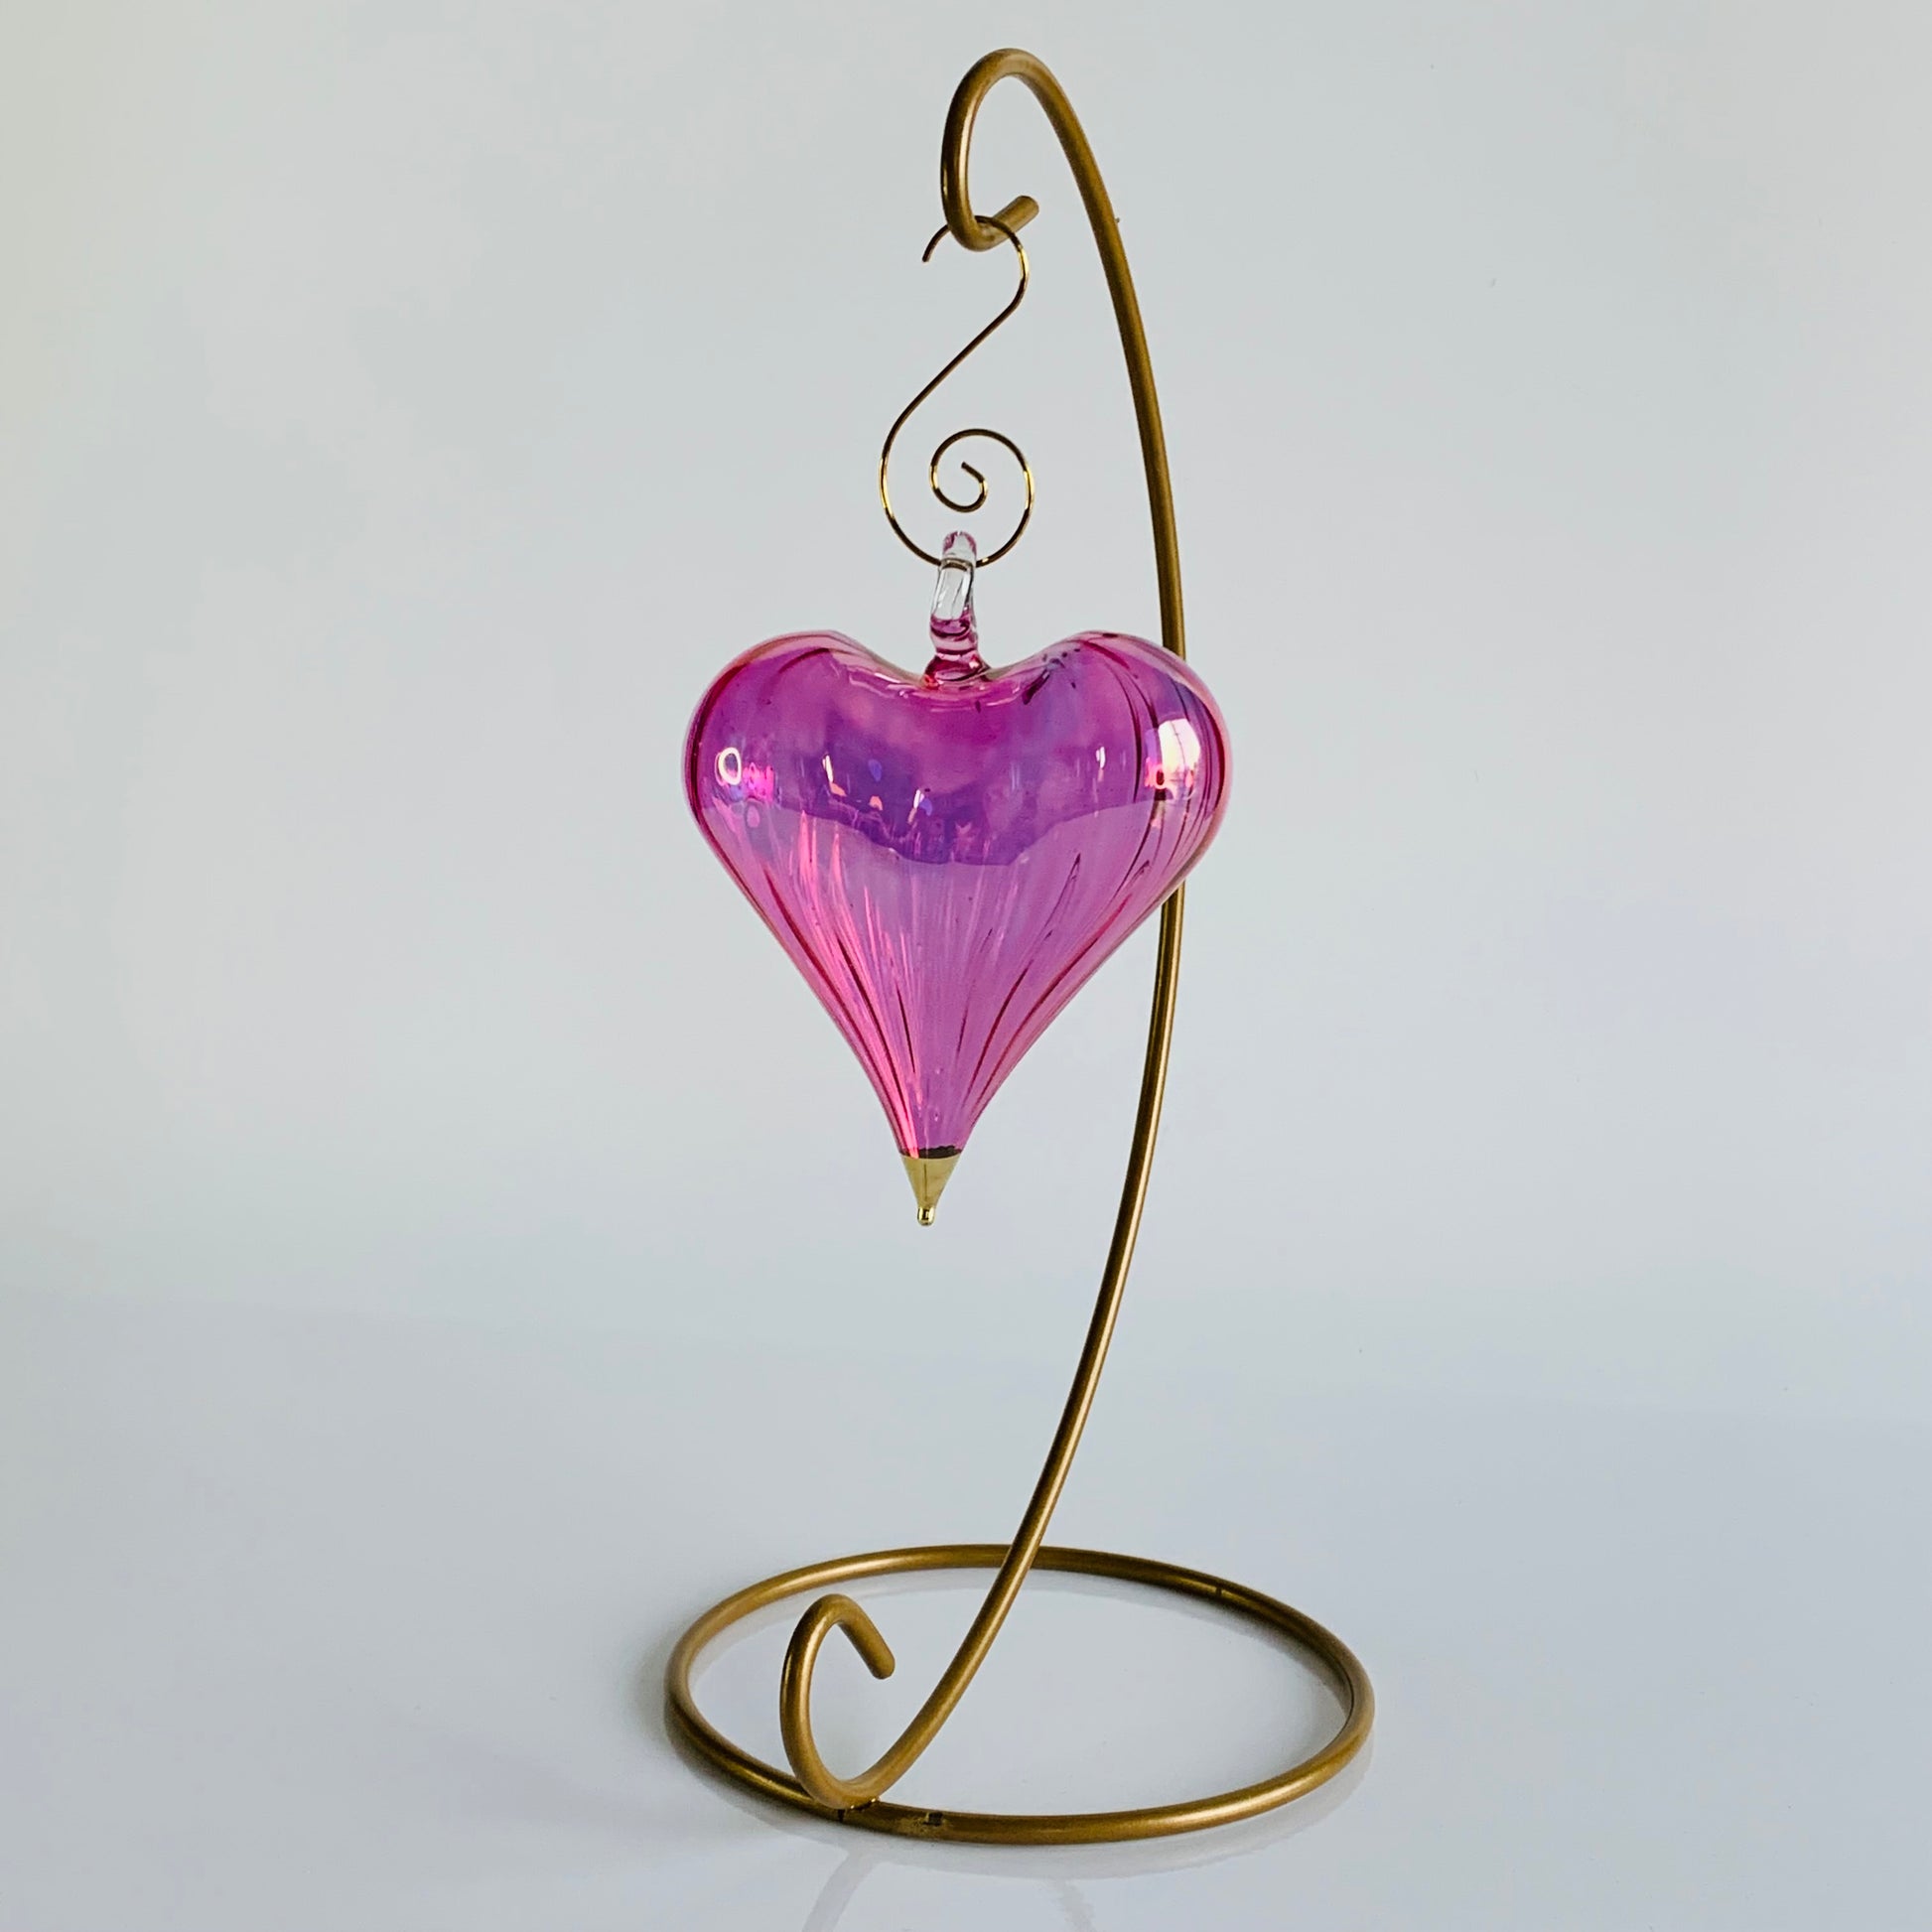 Blown Glass Ornament - Heart: Pink